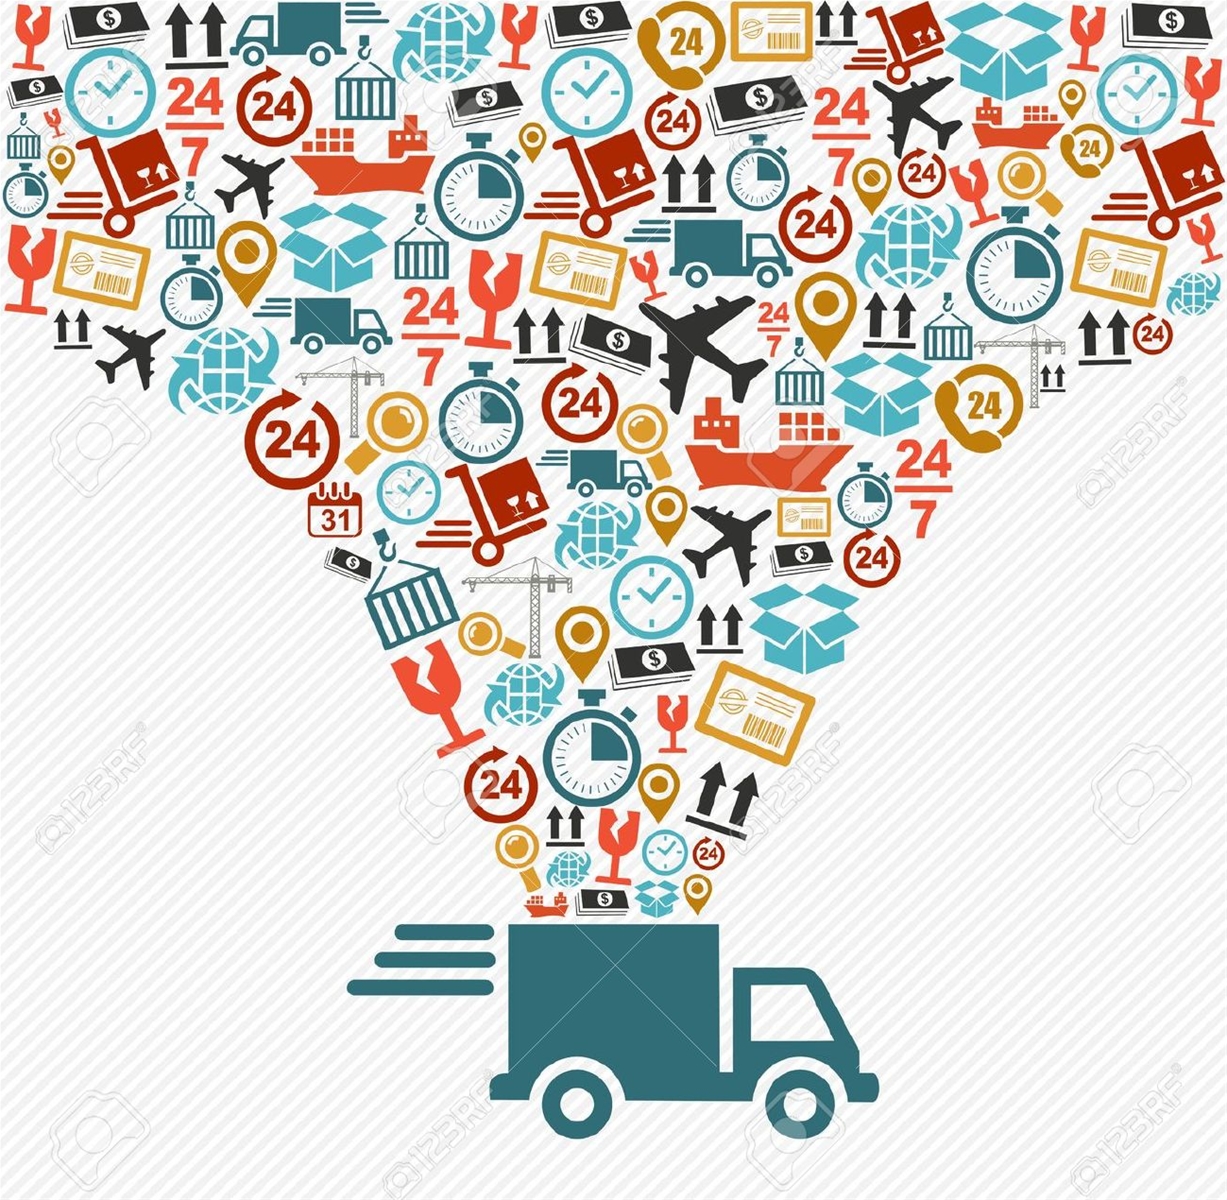 Vai trò của Marketing trong hoạt động Logistics